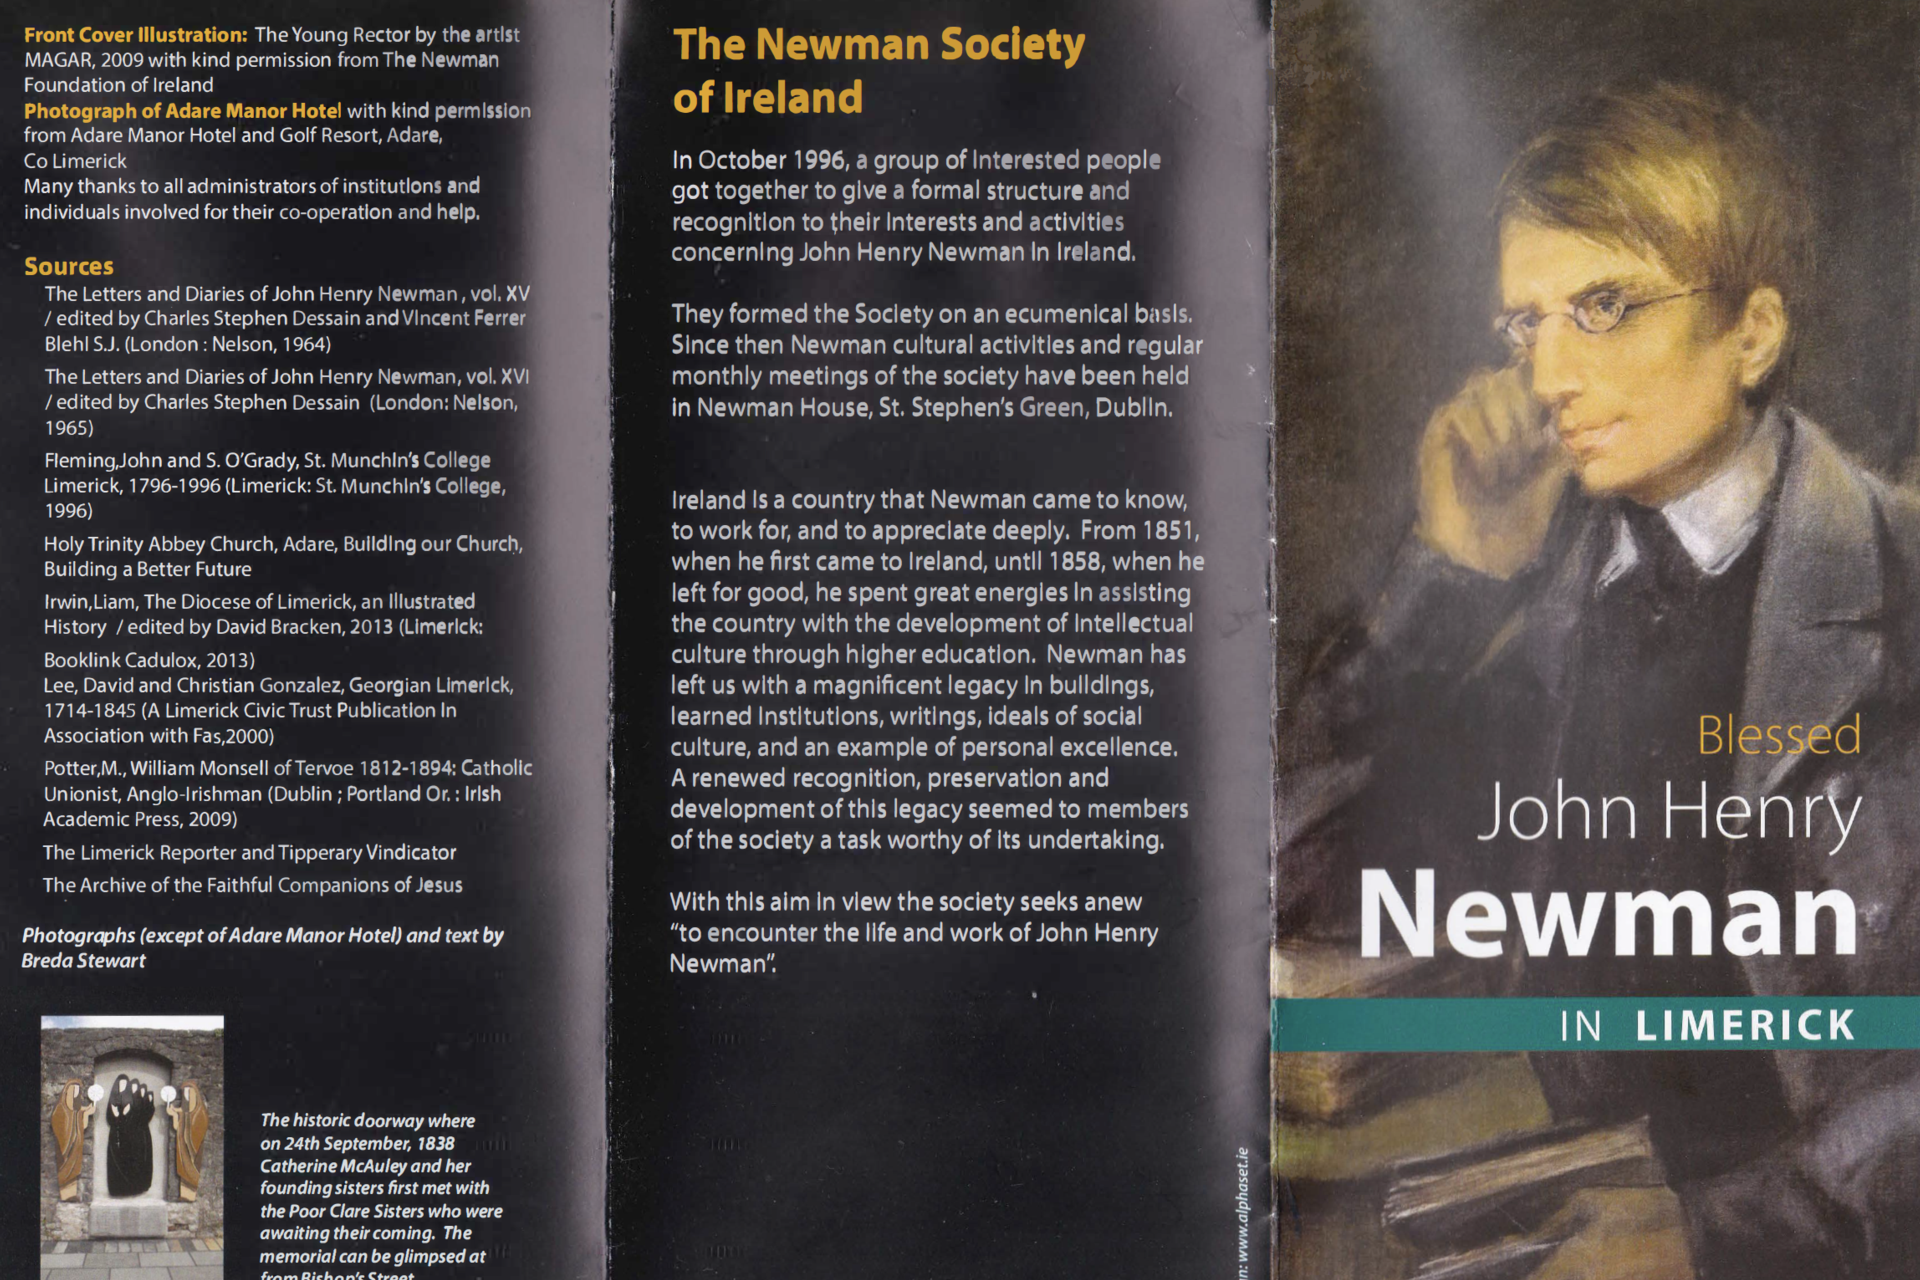 Blessed John Henry Newman in Limerick